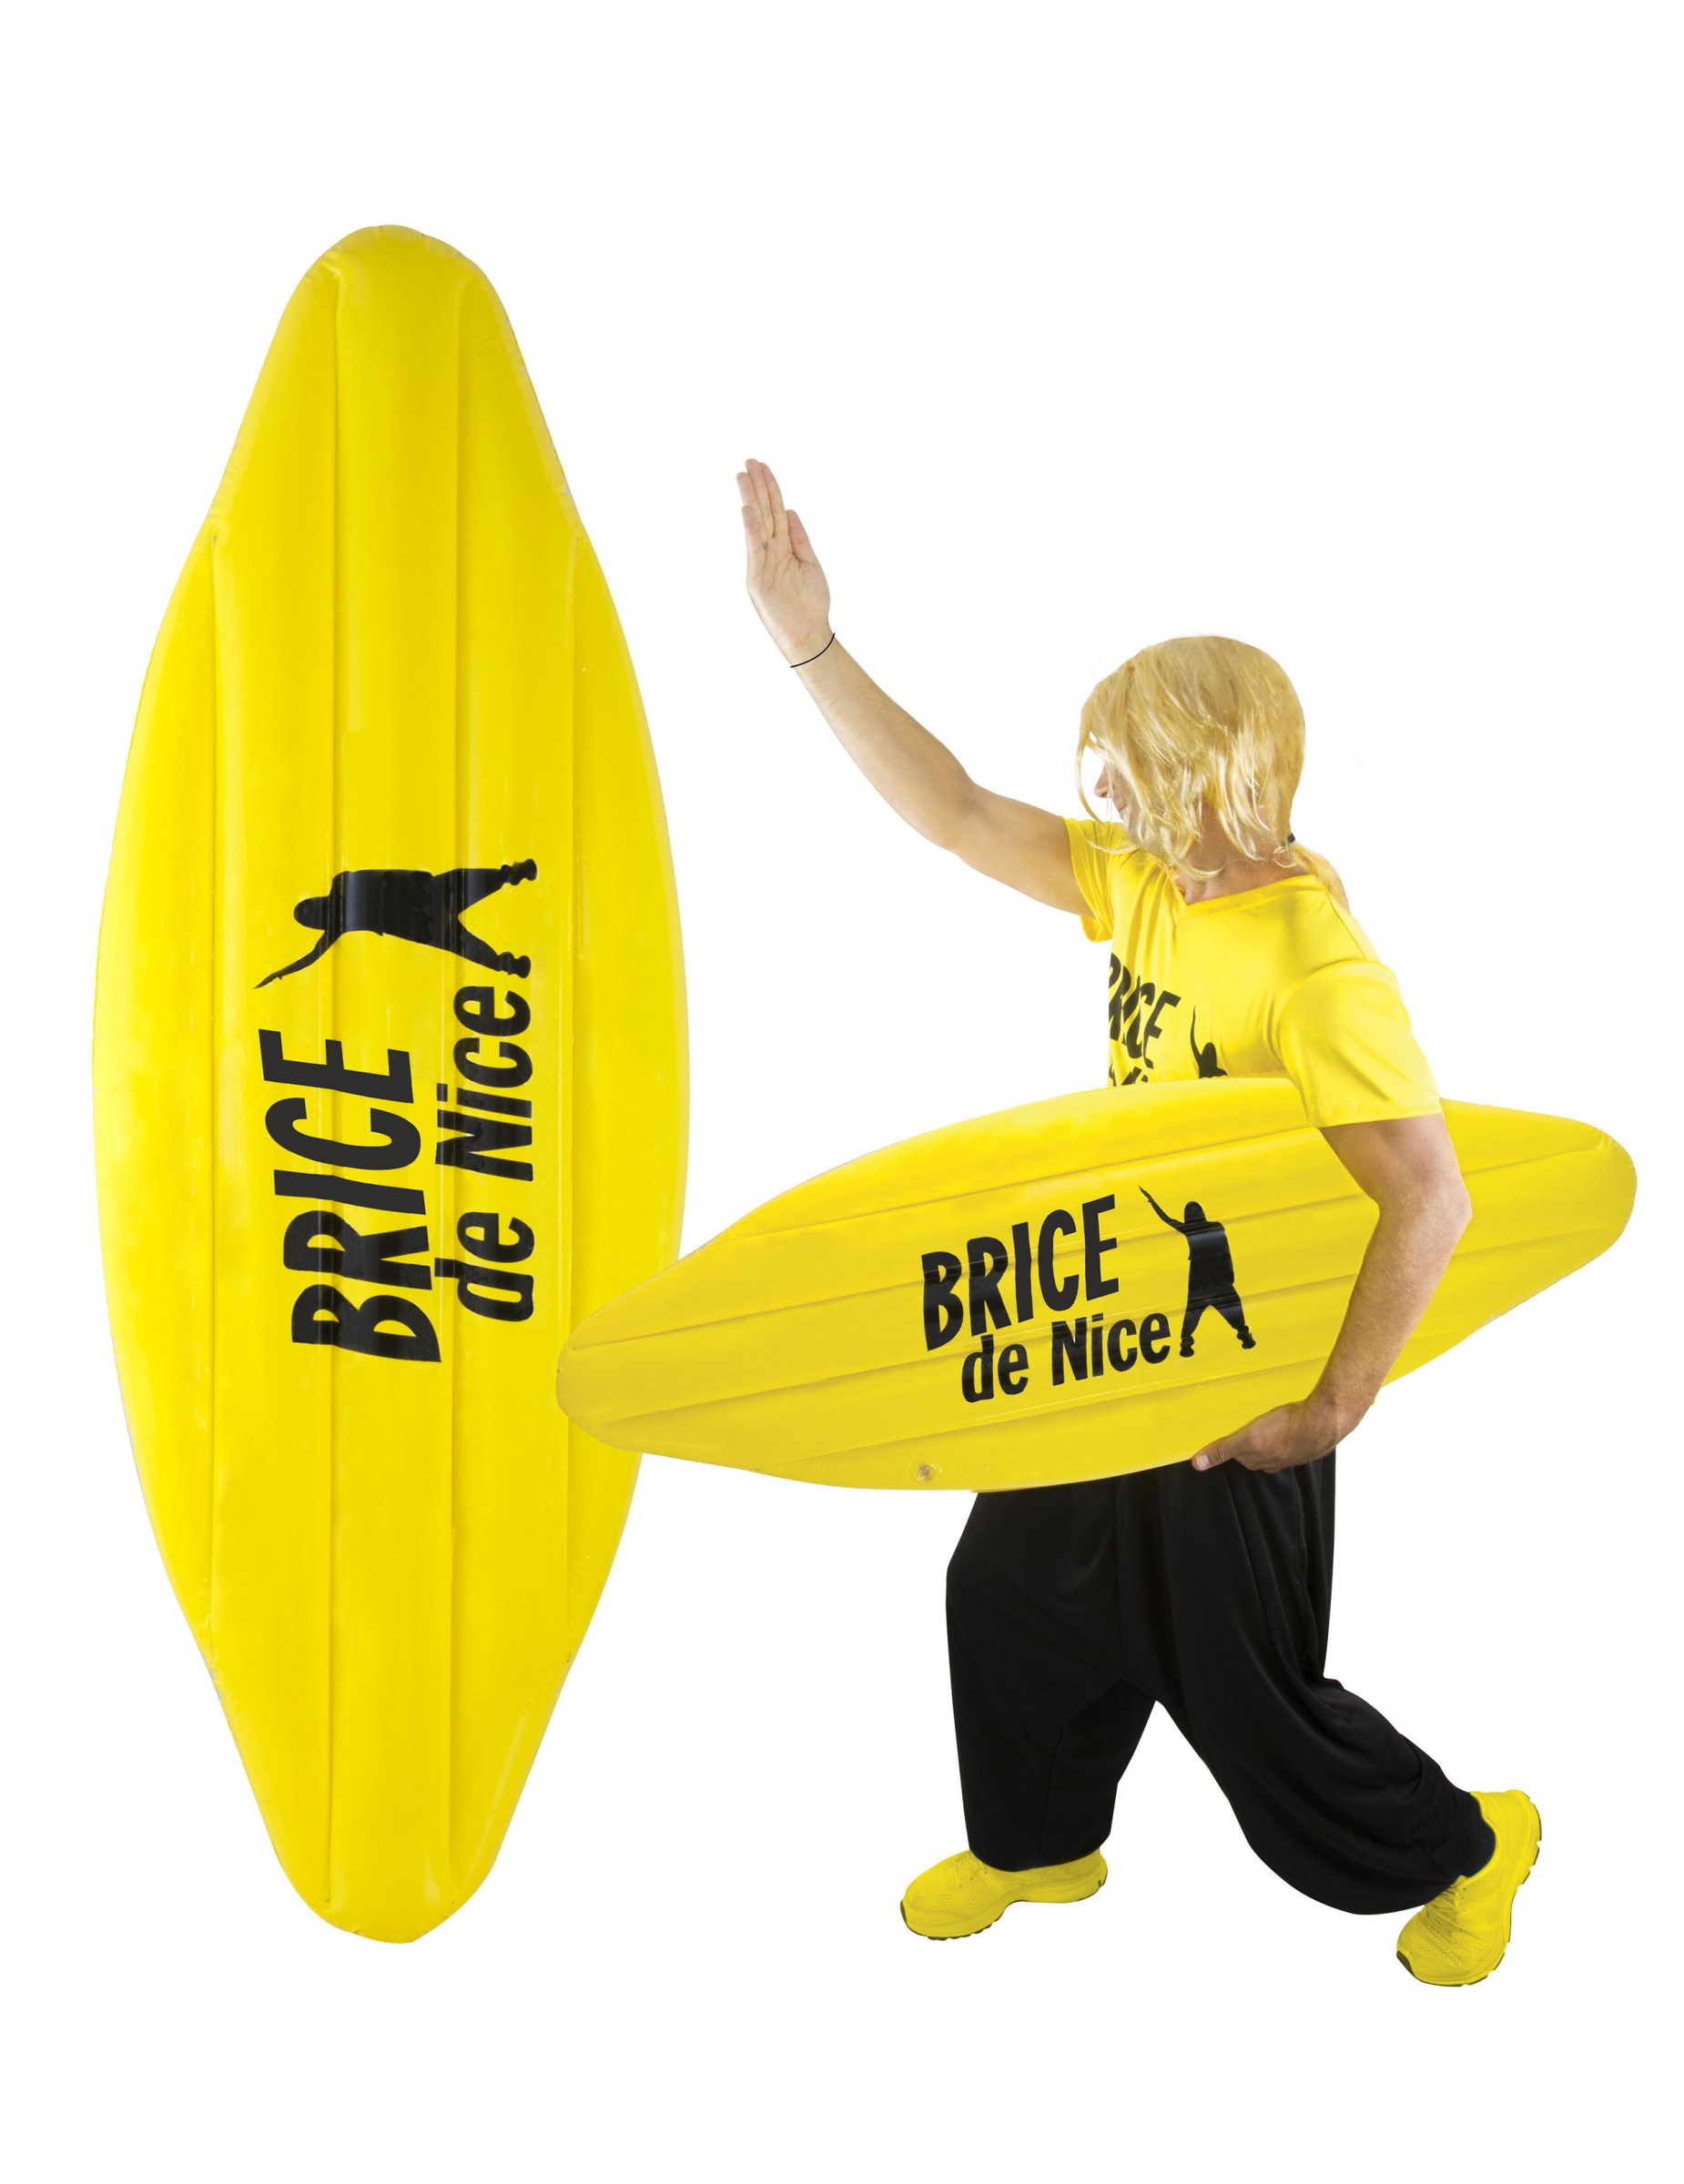 Brice de Nice aufblasbares Surfbrett Surfer-Zubehör gelb-schwarz von PTIT CLOWN